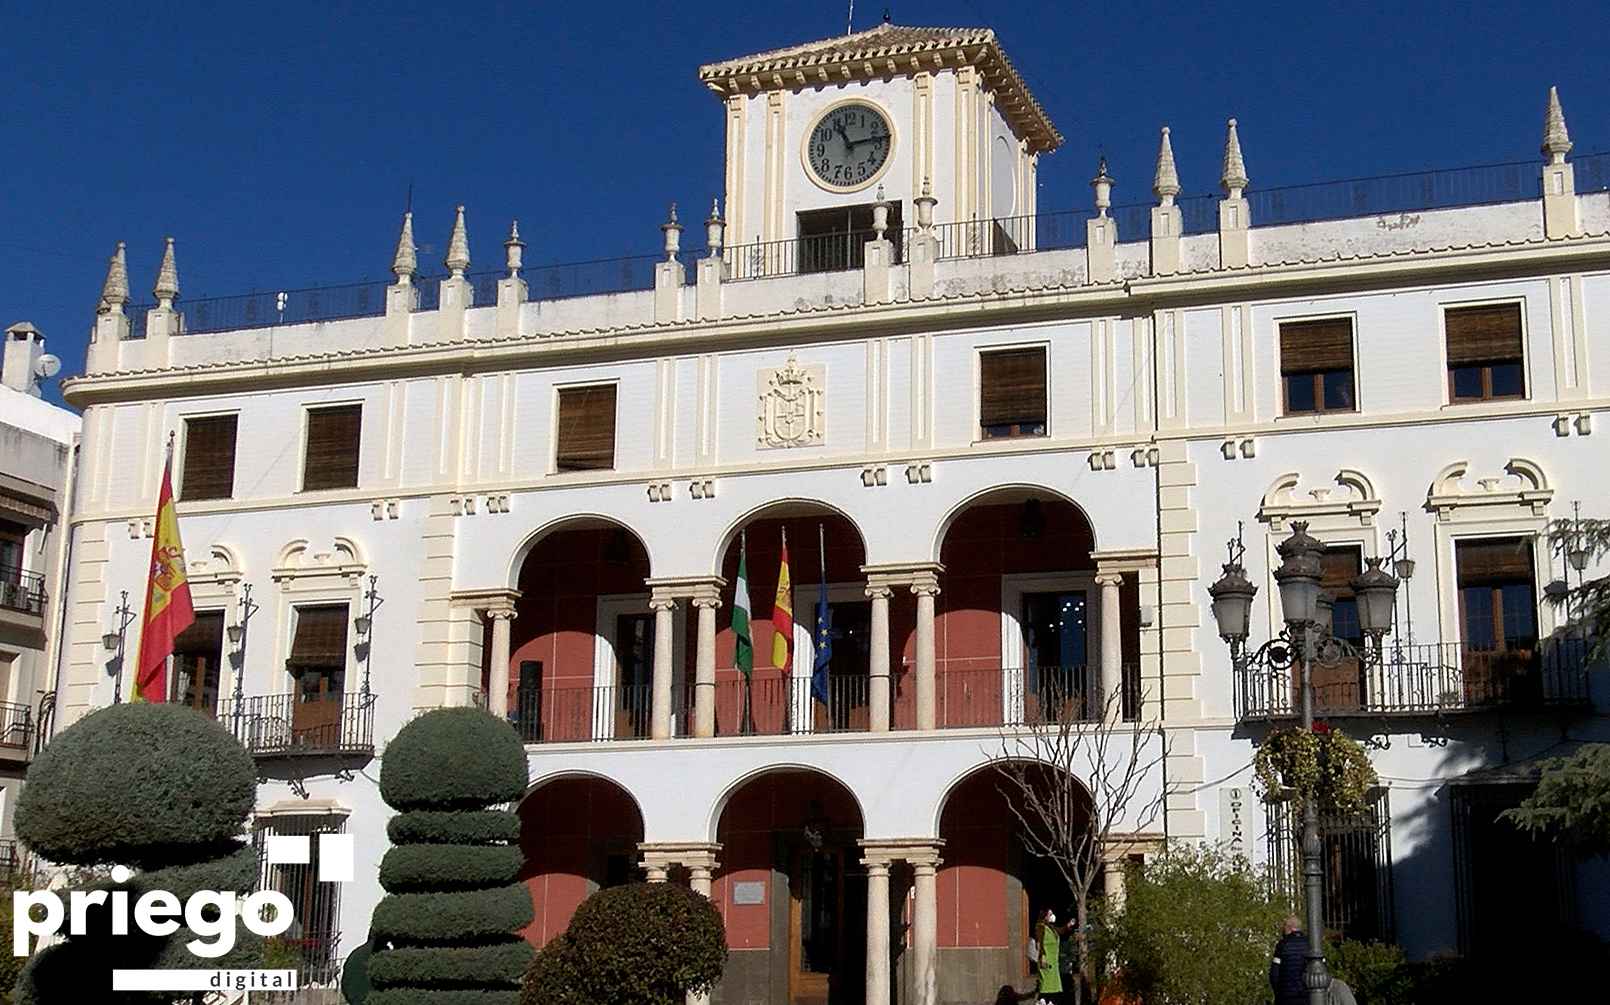 Edificio del ayuntamiento de Priego.